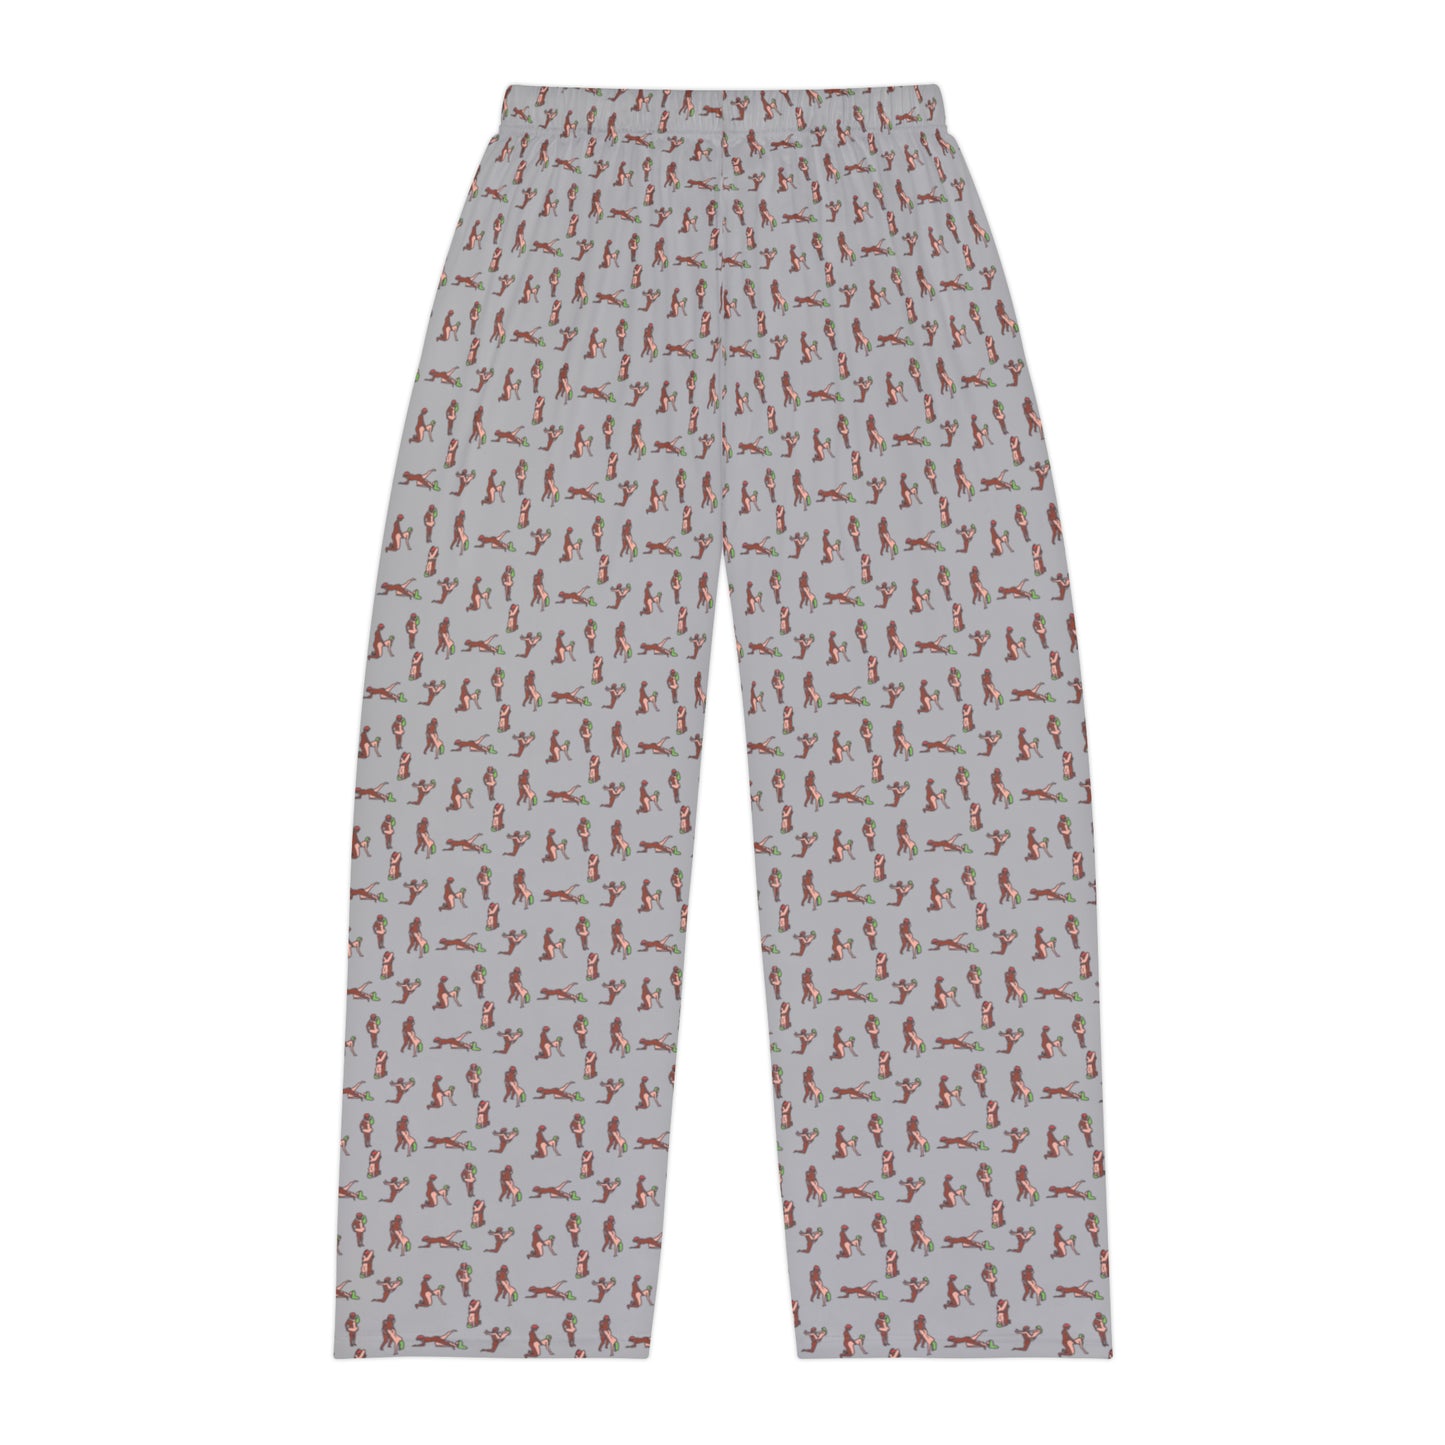 Karmasutra Men's Pajama Pants